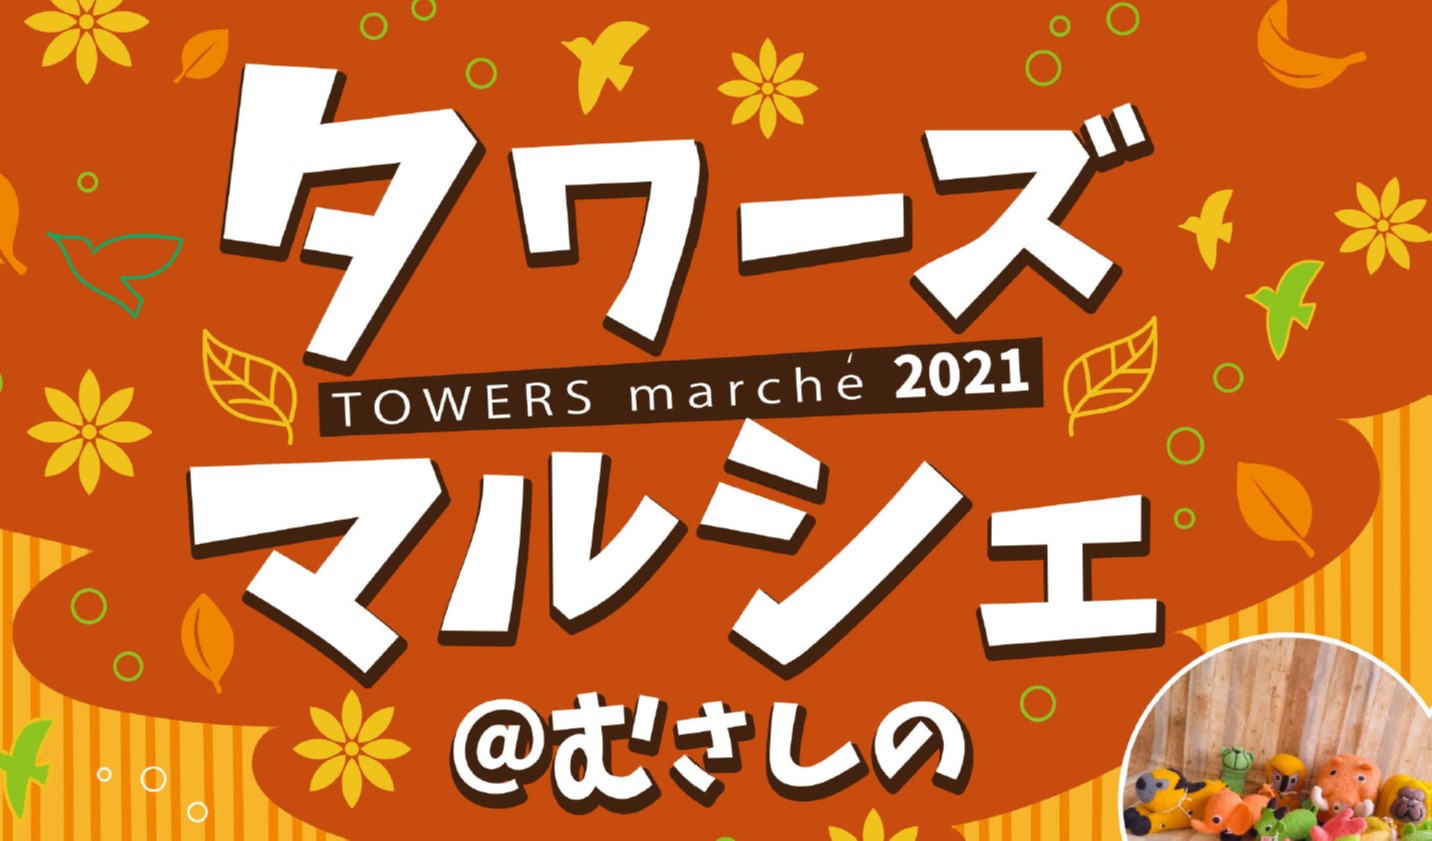 タワーズマルシェ@むさしの2021（11/20開催）内の武蔵野市産野菜販売に協力いたします